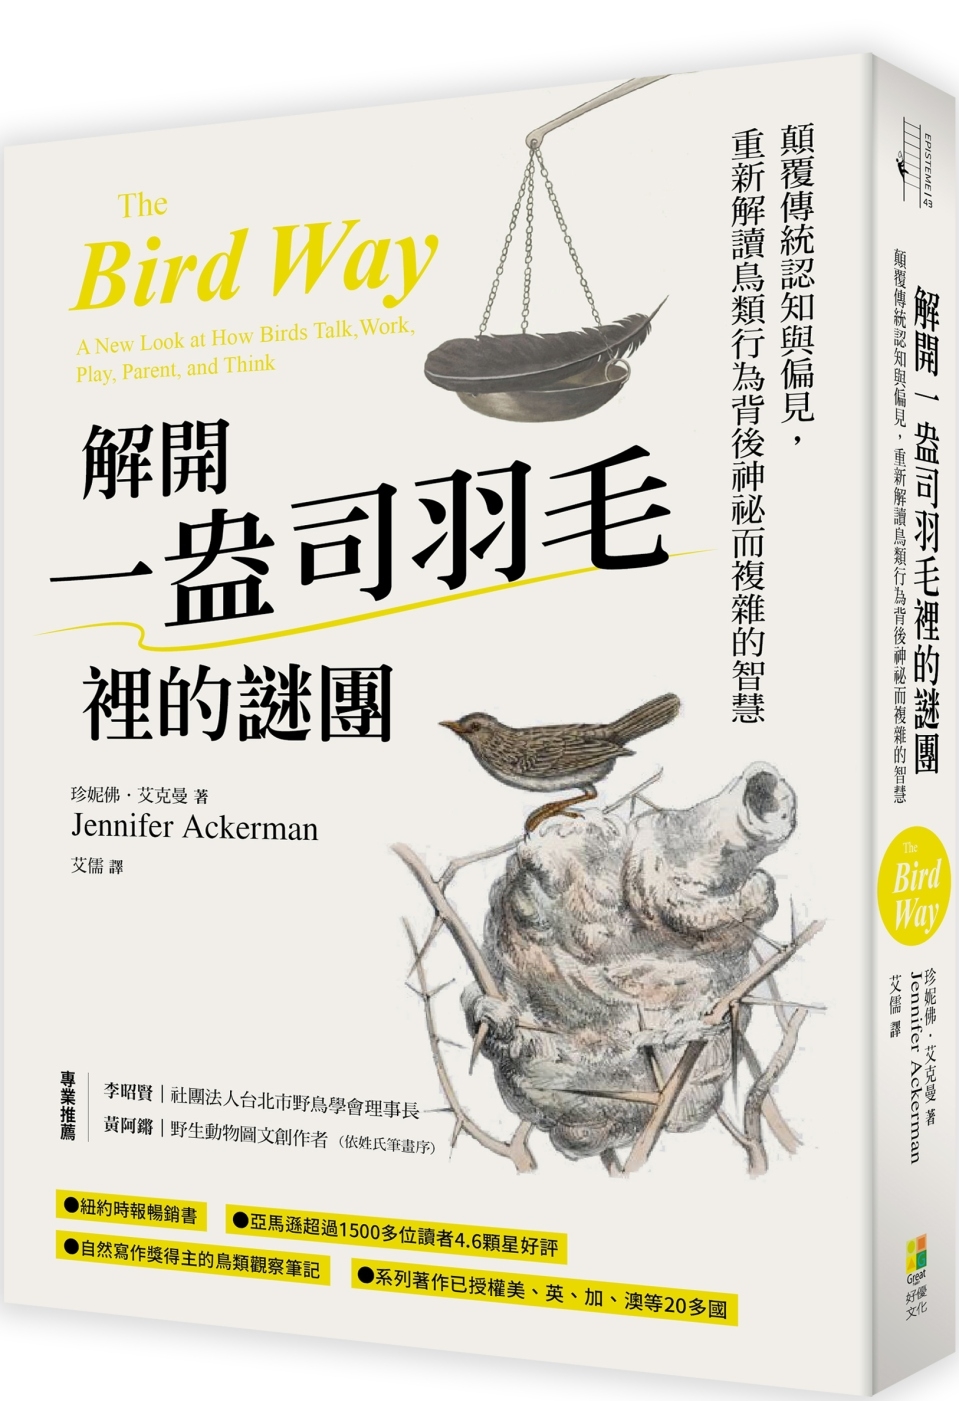 解開一盎司羽毛裡的謎團：顛覆傳統認知與偏見，重新解讀鳥類行為...